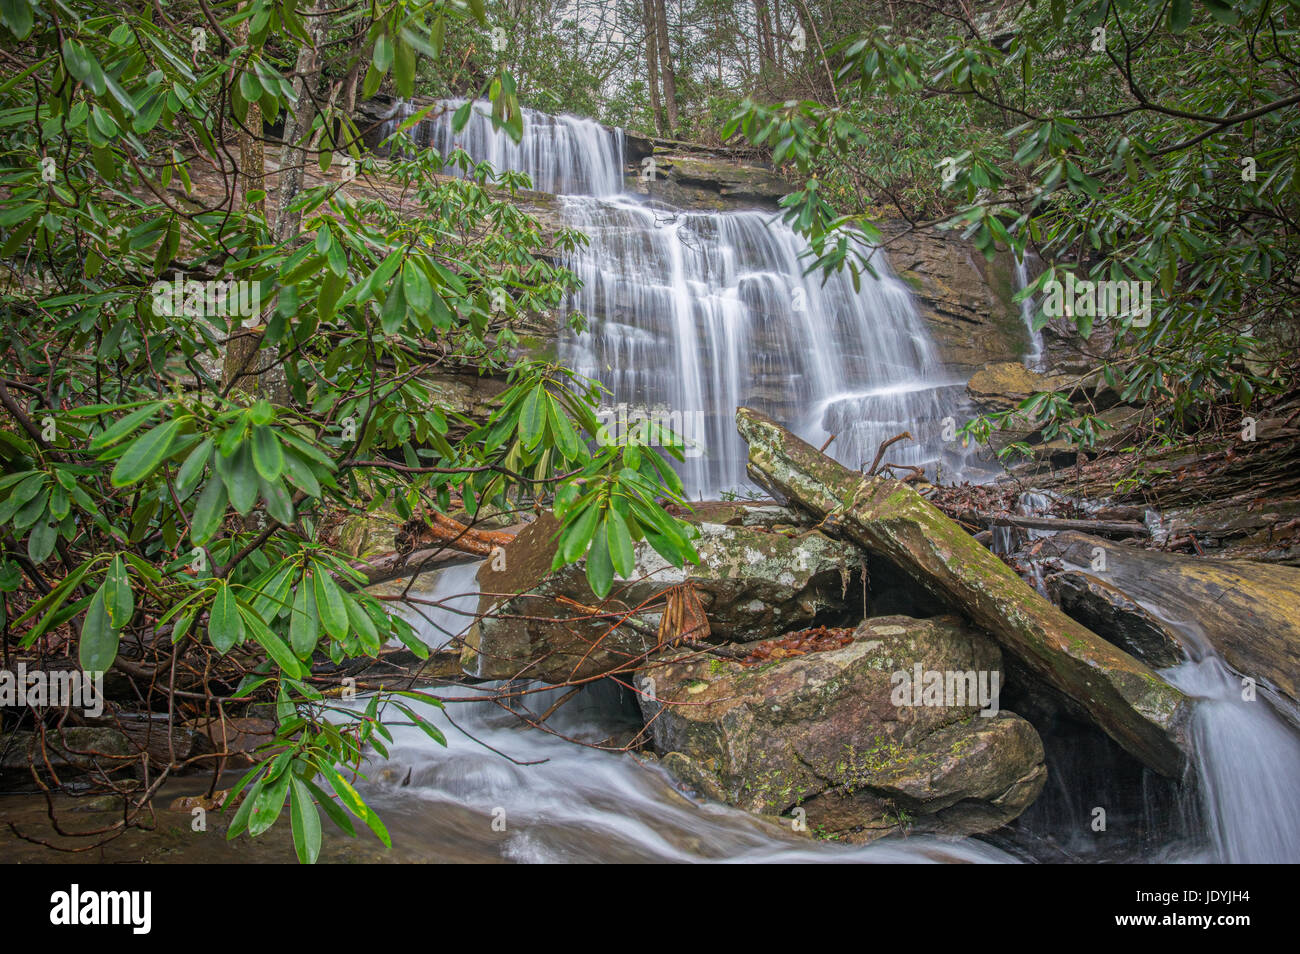 Versteckt vor der weit gereiste Route 16 in der Nähe von Hawks Nest West Virginia, liegt ein saisonale alcoved Wasserfall Honig Zweig, genannt in Rhododendr gekleidet Stockfoto